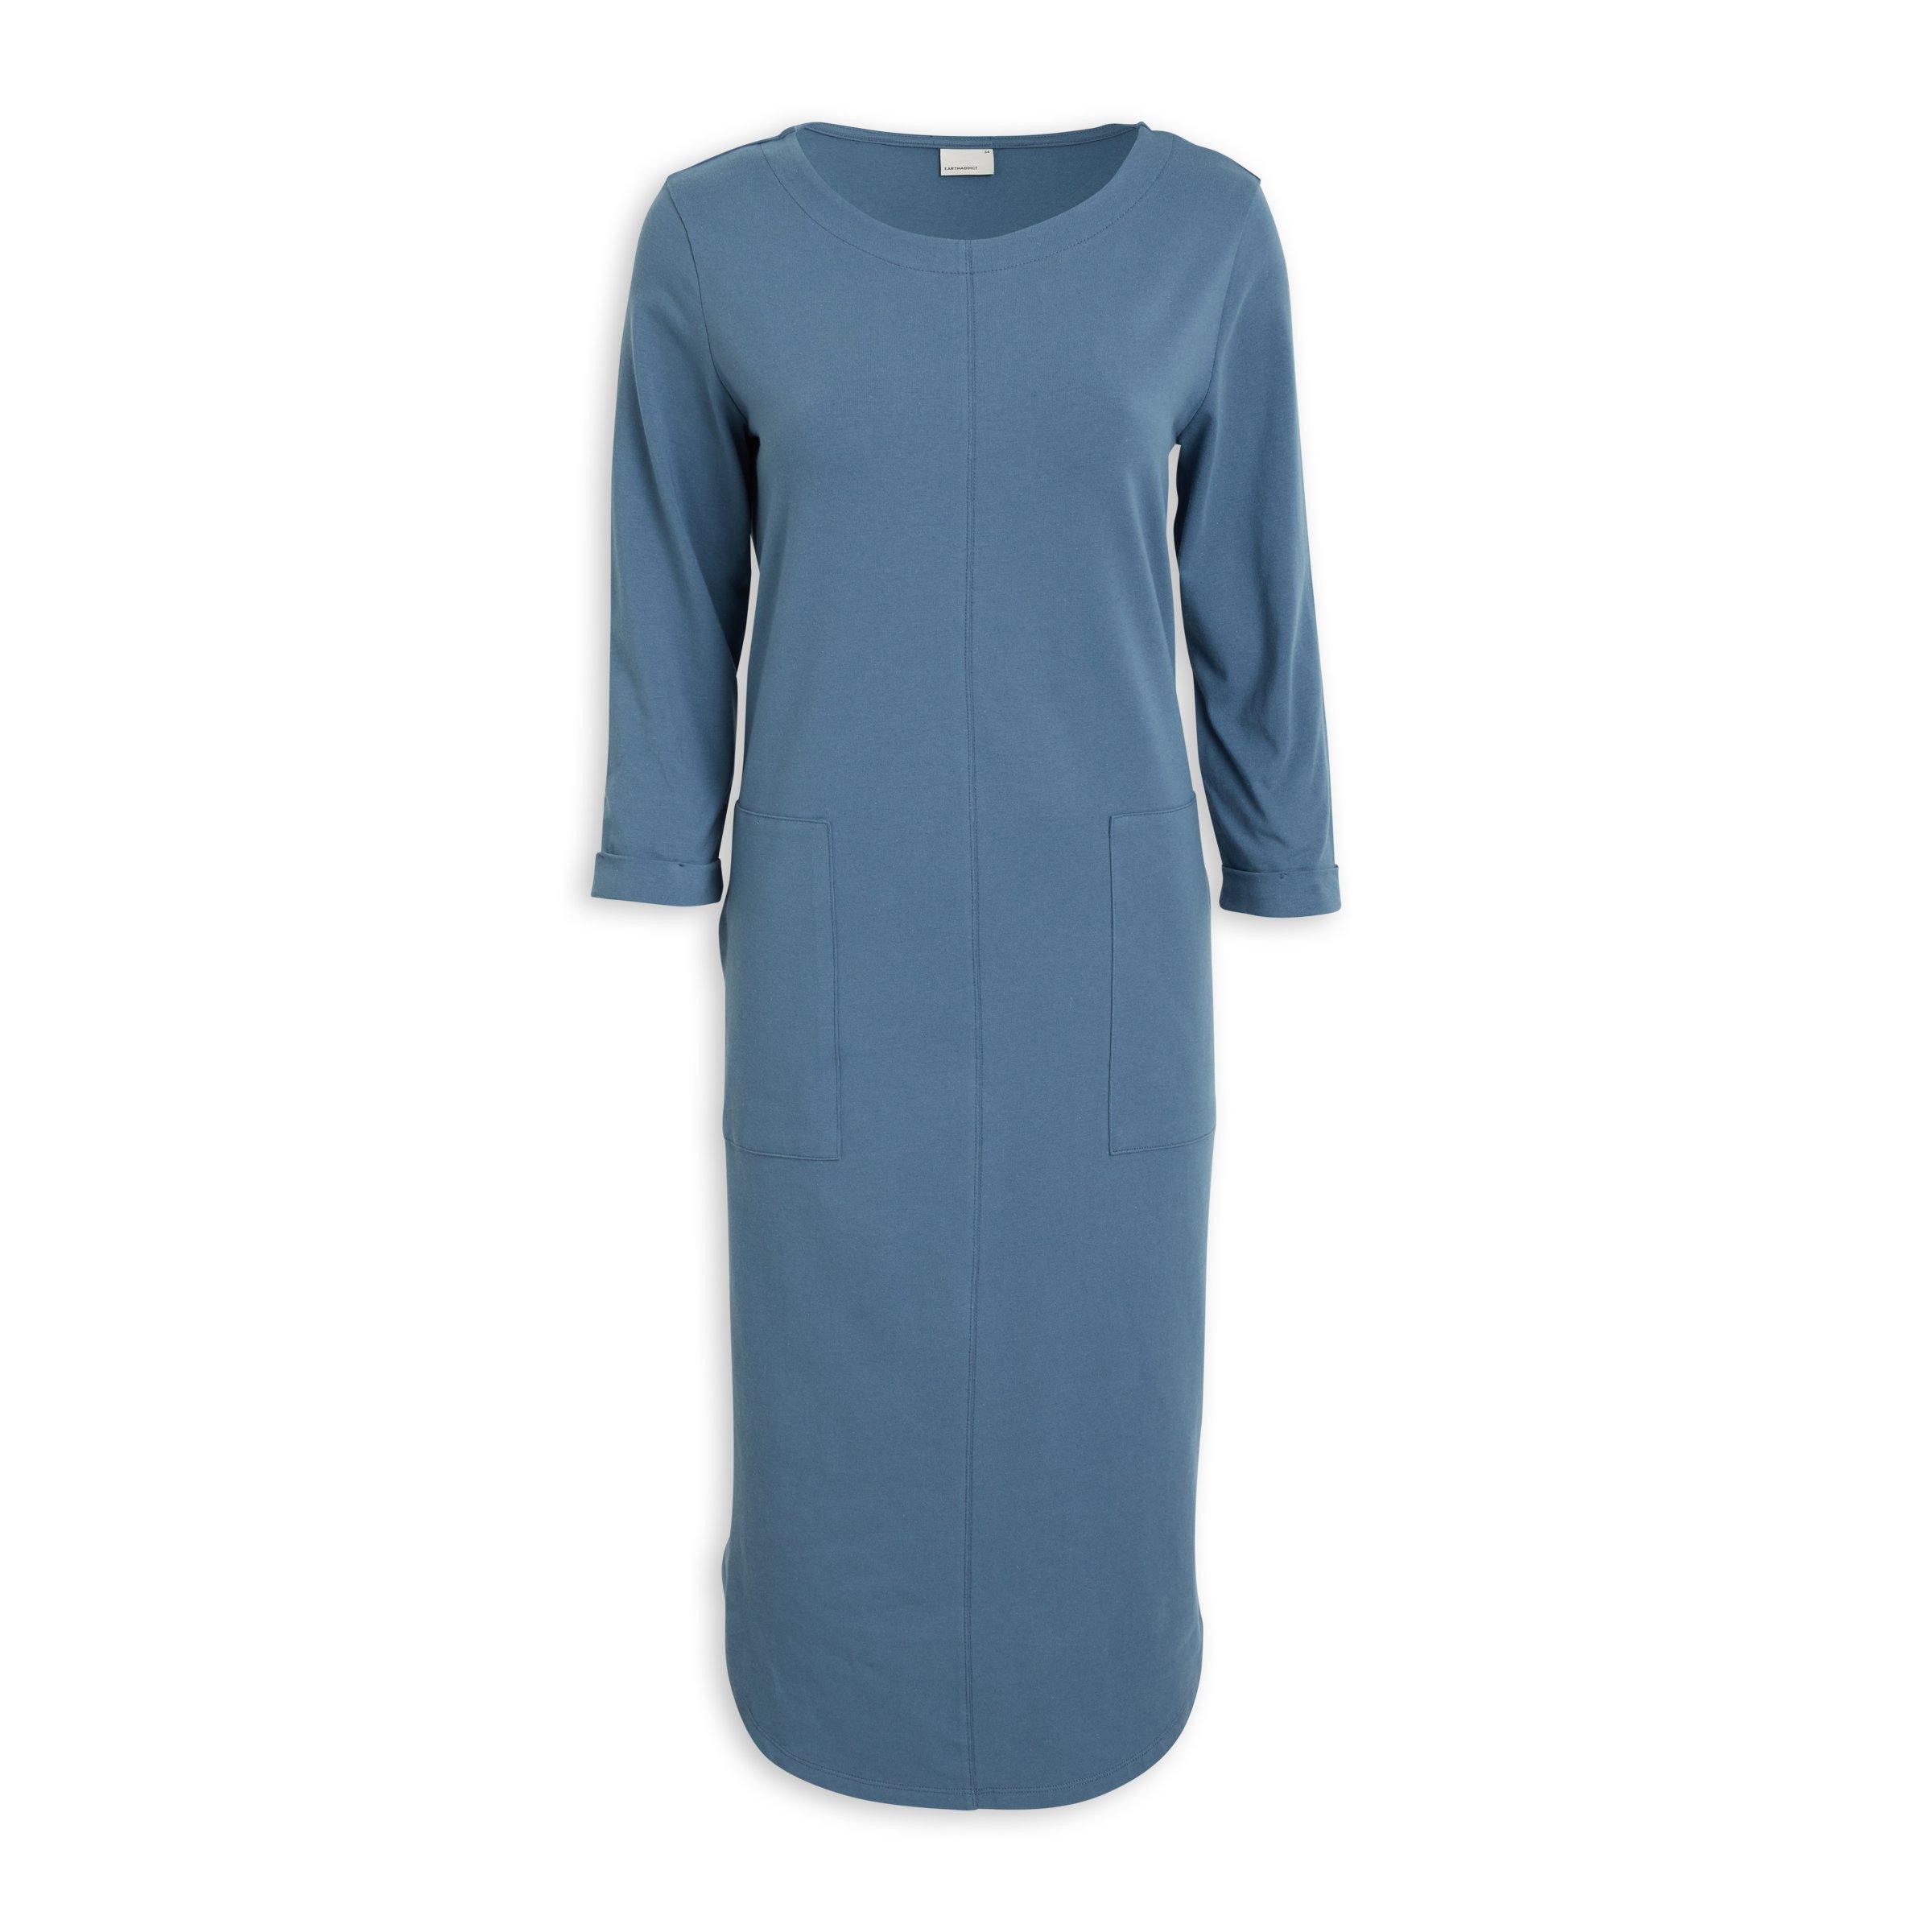 Buy Earthaddict Blue Sheath Dress Online | Truworths